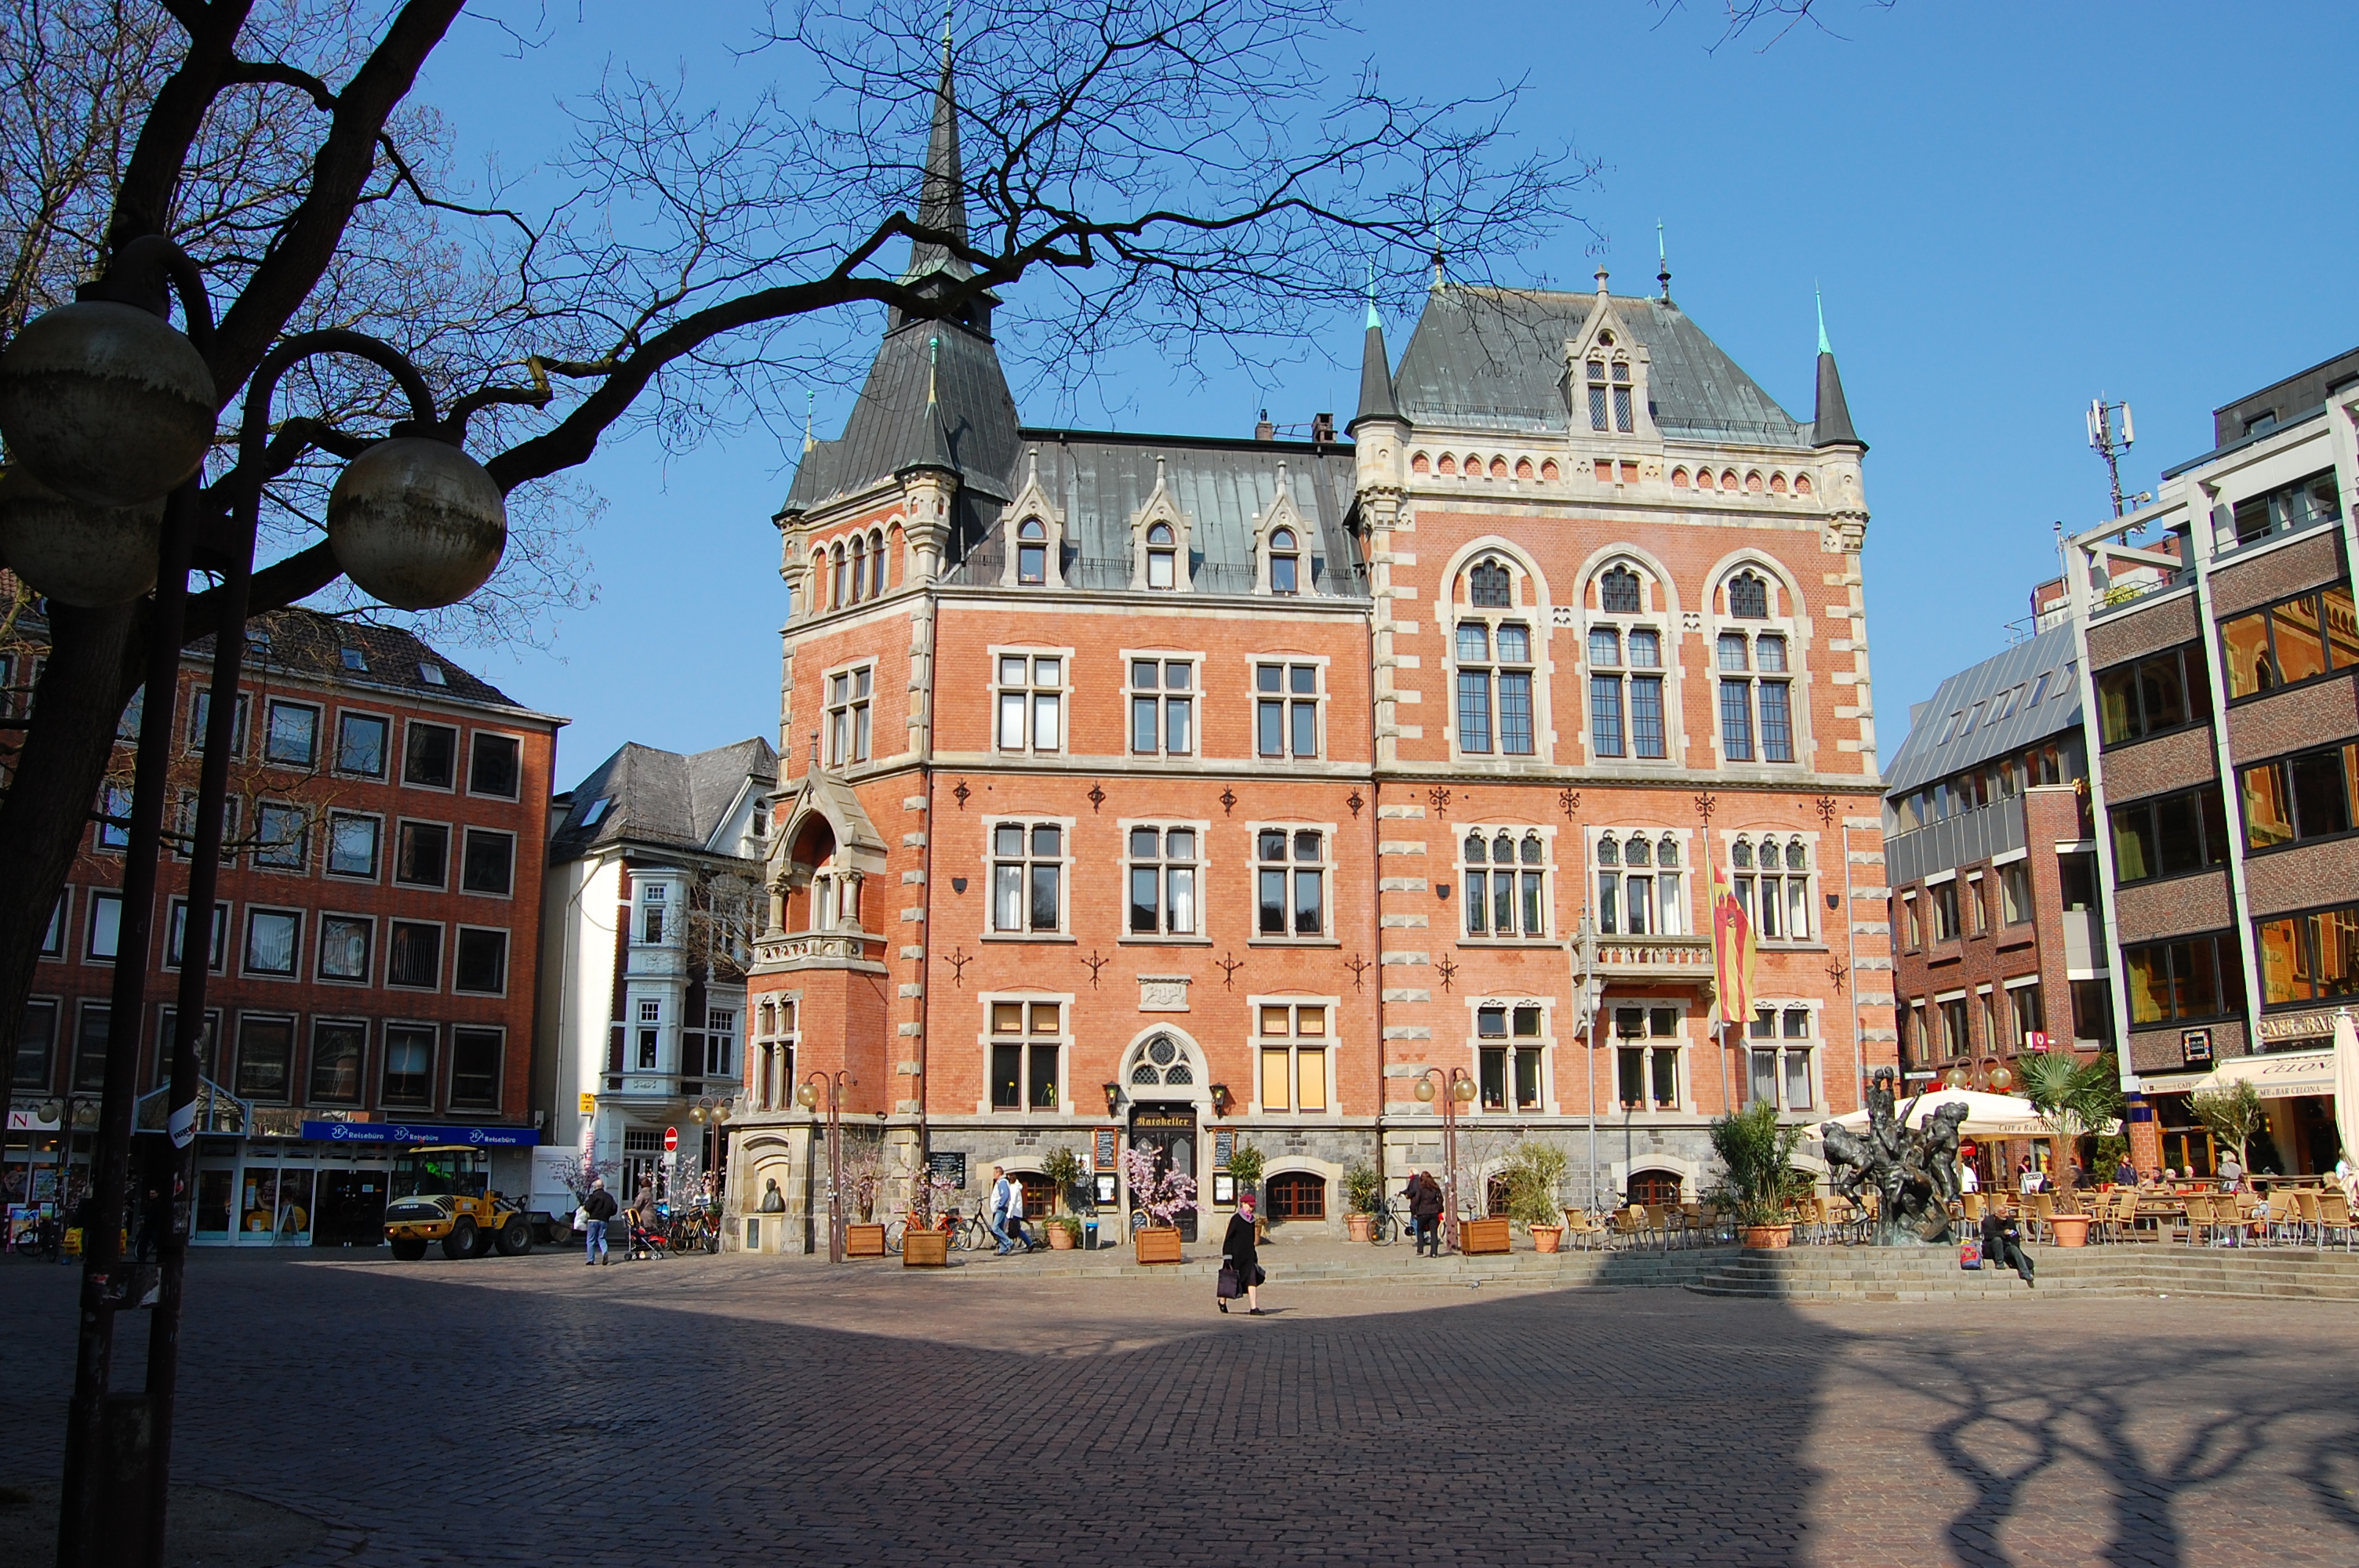 Das Alte Rathaus von Oldenburg aus dem Jahre 1888.
